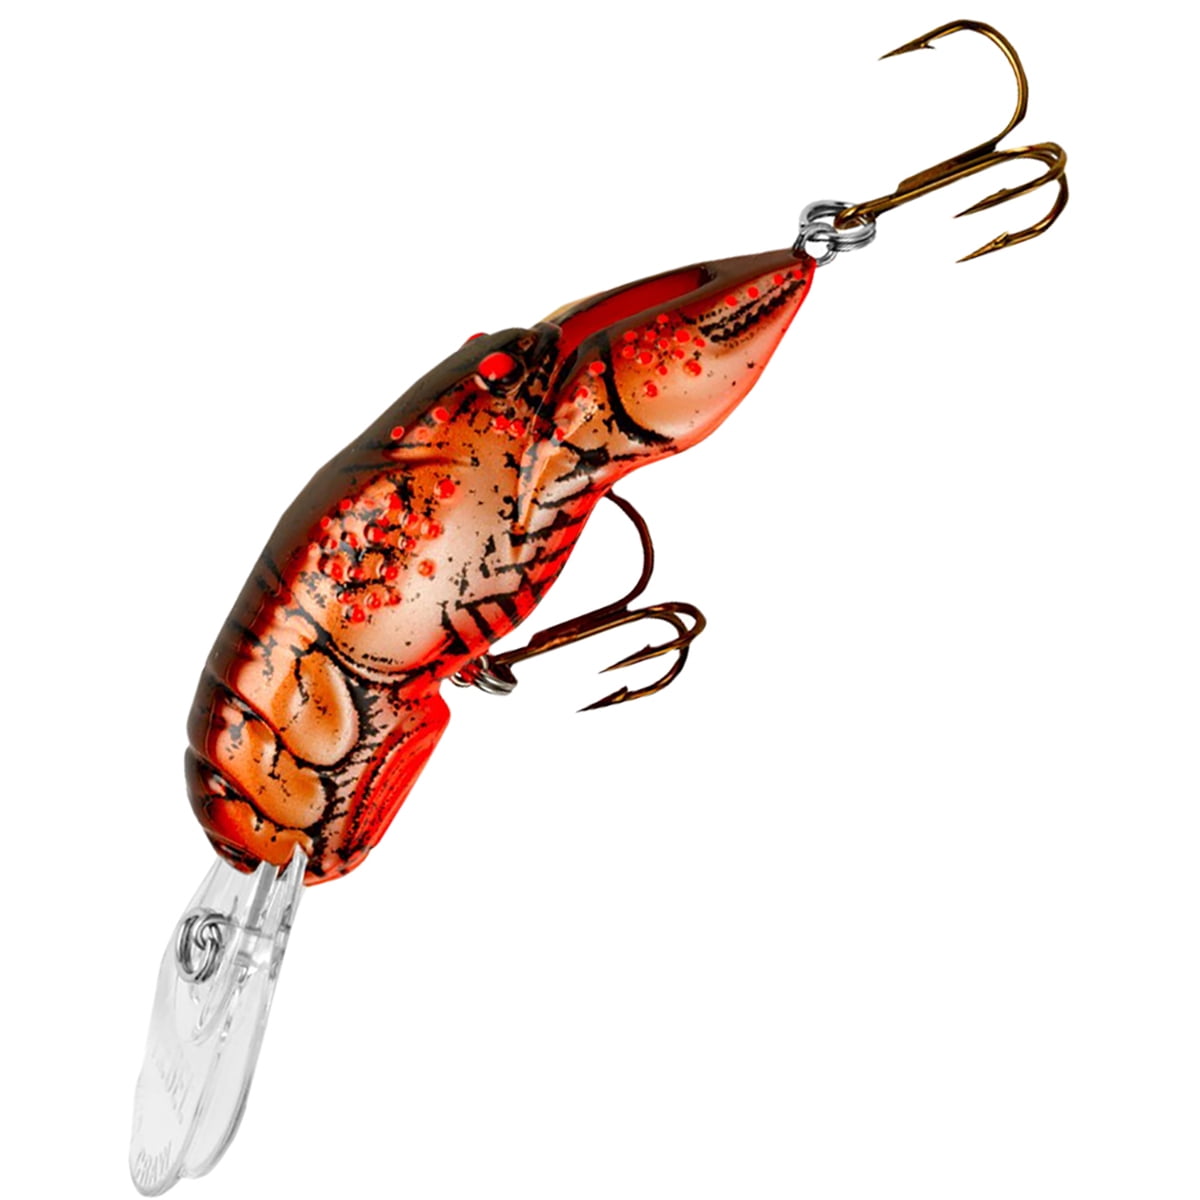 Rebel Wee Crawfish 2 inch Medium Diving Crankbait — Discount Tackle